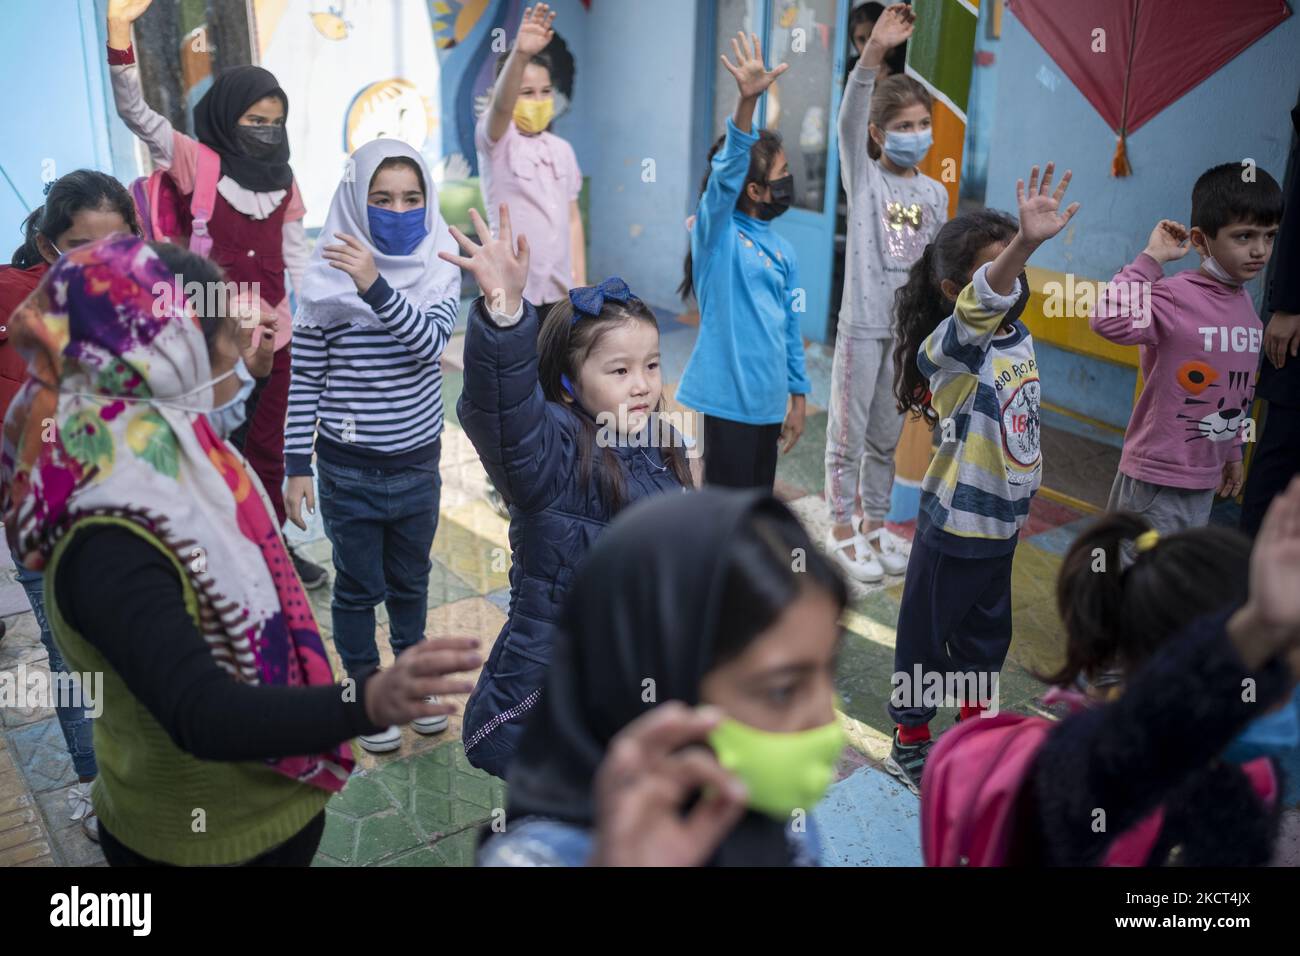 Le studentesse afghane rifugiate si esercitano alla scuola di Farhang nel primo giorno del nuovo anno accademico? Nel sud di Teheran il 1 novembre 2021. La scuola di Farhang è stata fondata nel 2000 dal rifugiato afgano Nader Mousavi che si è laureato in sociologia presso l'Università di Teheran, per i bambini rifugiati afghani, E ora due anni dopo l’inizio dell’epidemia COVID-19 in Iran, dove la scuola operava a tempo parziale, ha iniziato a funzionare a tempo pieno e le scolaresche e gli scolari afghani possono frequentare la scuola. Le famiglie non devono pagare i soldi per le tasse scolastiche perché sono gratuite per gli afghani Foto Stock